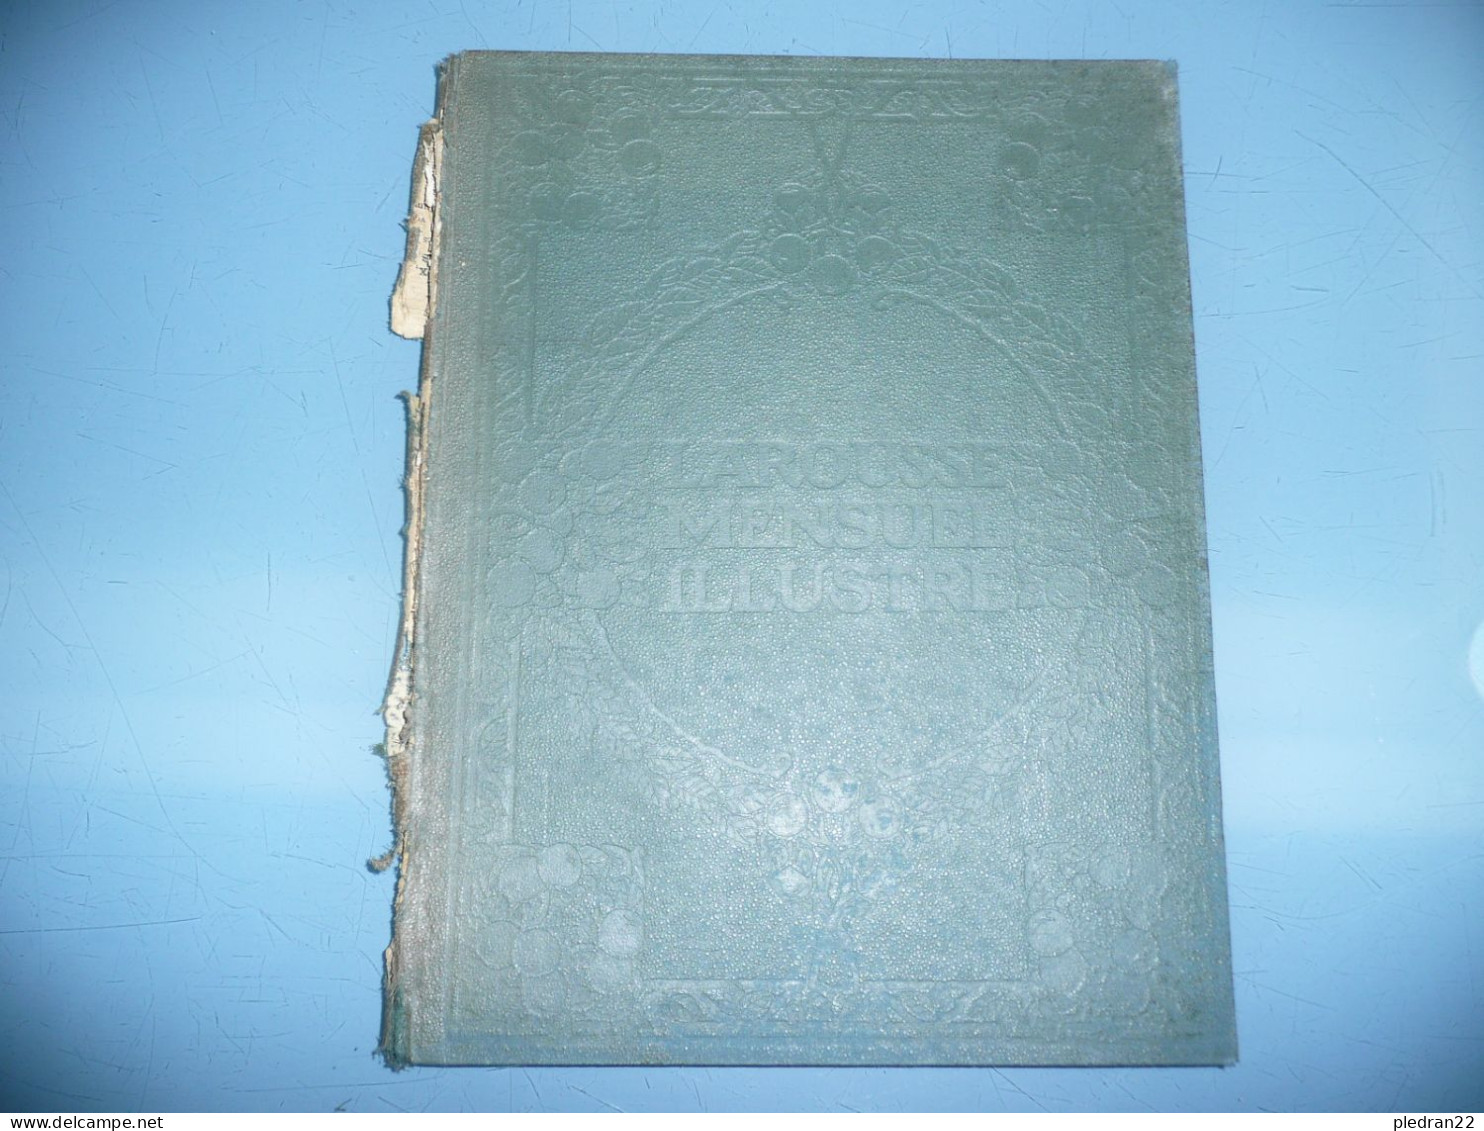 CLAUDE AUGE LAROUSSE MENSUEL ILLUSTRE REVUE ENCYCLOPEDIQUE UNIVERSELLE TABLE GENERALE 1907 1922 - Encyclopaedia